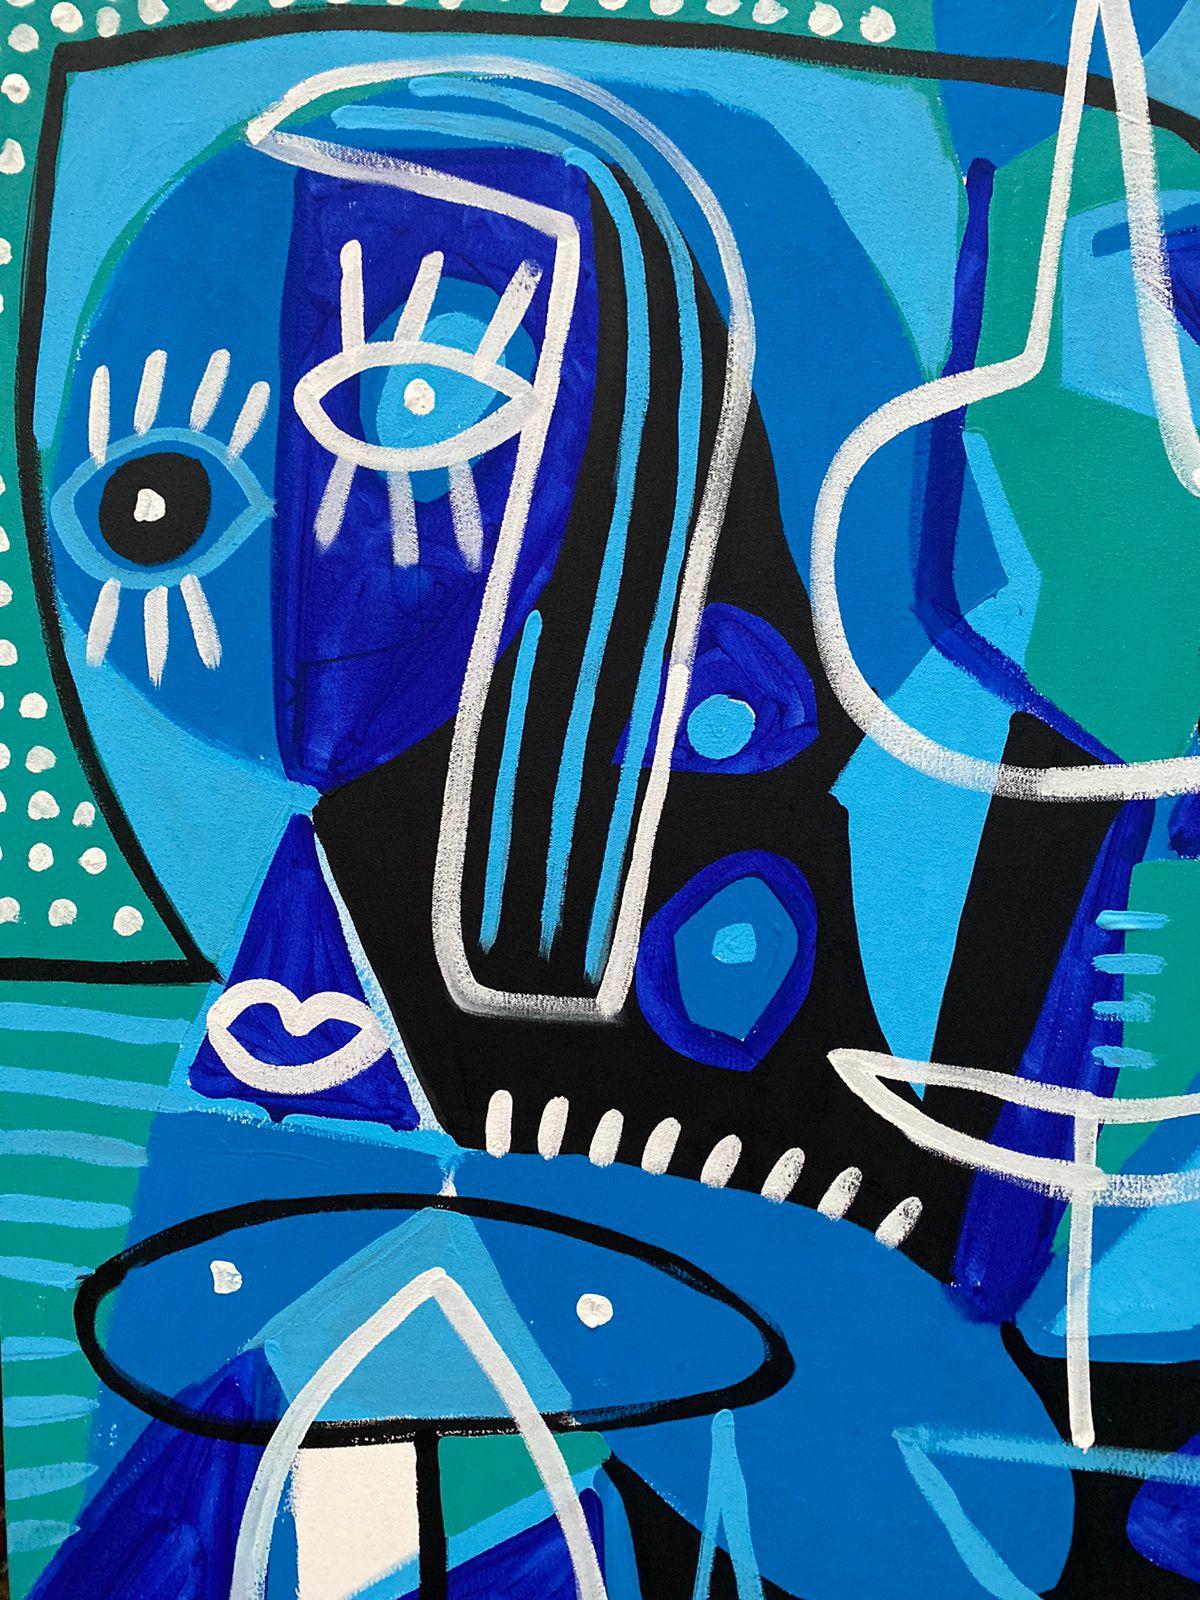 Art contemporain, peinture abstraite
Acrylique sur toile
168x239cm
Signé 




A propos de l'artiste
Enrique Pichardo (Mexico, 1973) est diplômé de l'Escuela Nacional de Pintura, Escultura y Grabado (ENPEG) 